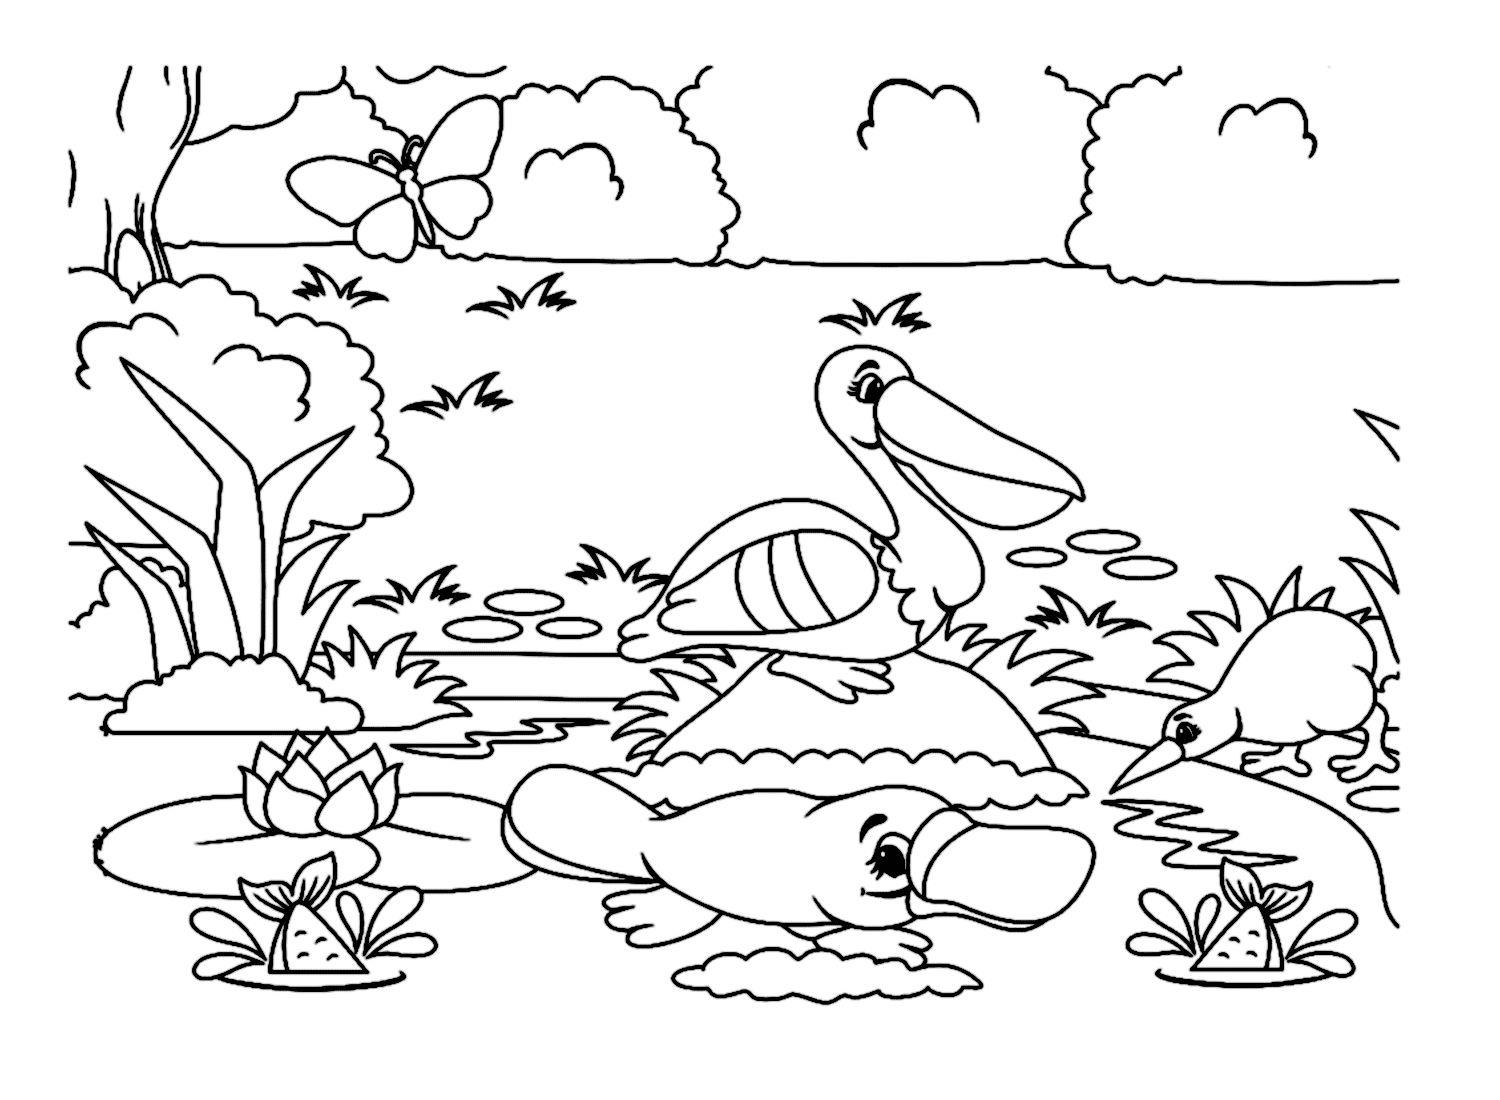 Vogelbekdier op de rivieroever met andere dieren van Vogelbekdier